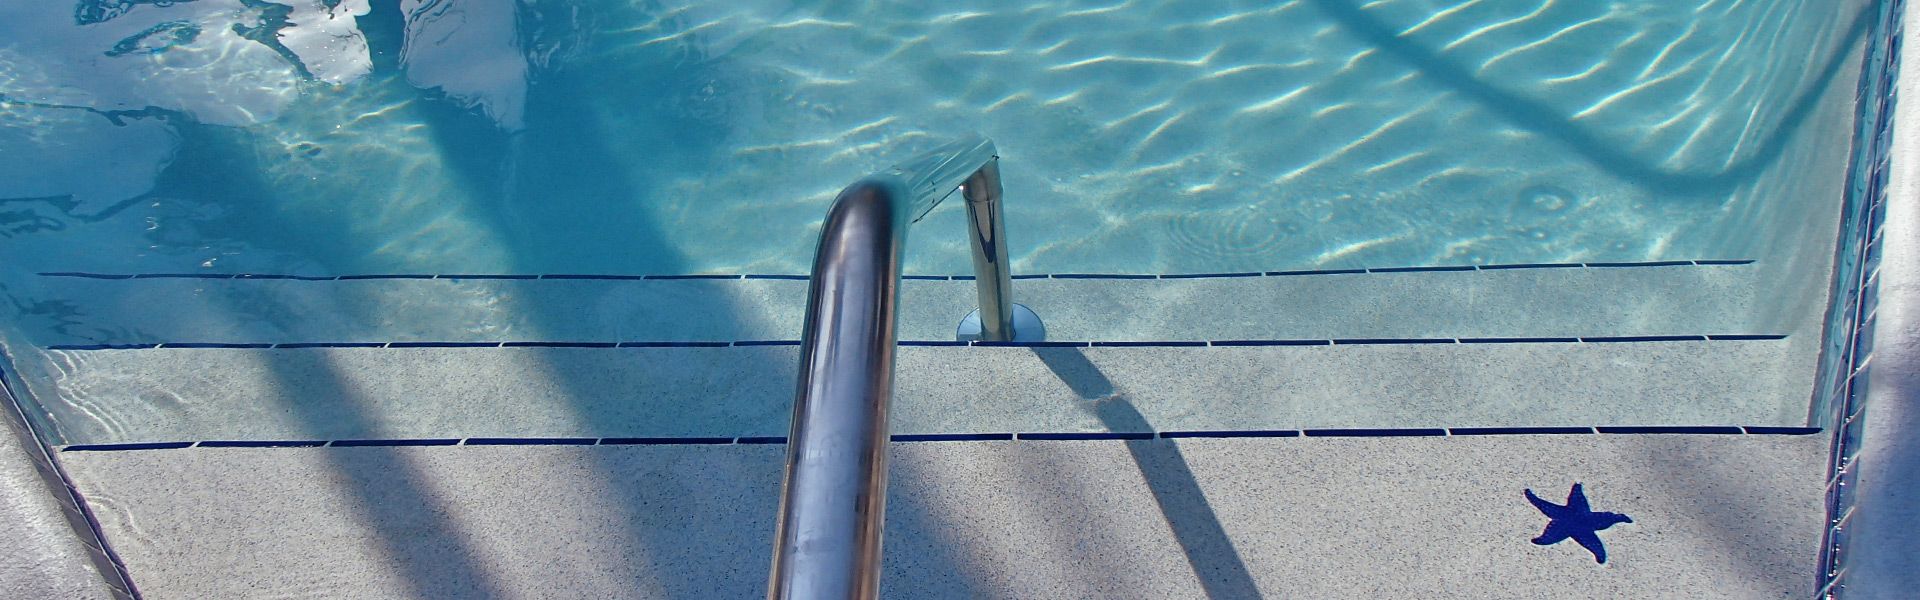 pool resurfacing miami